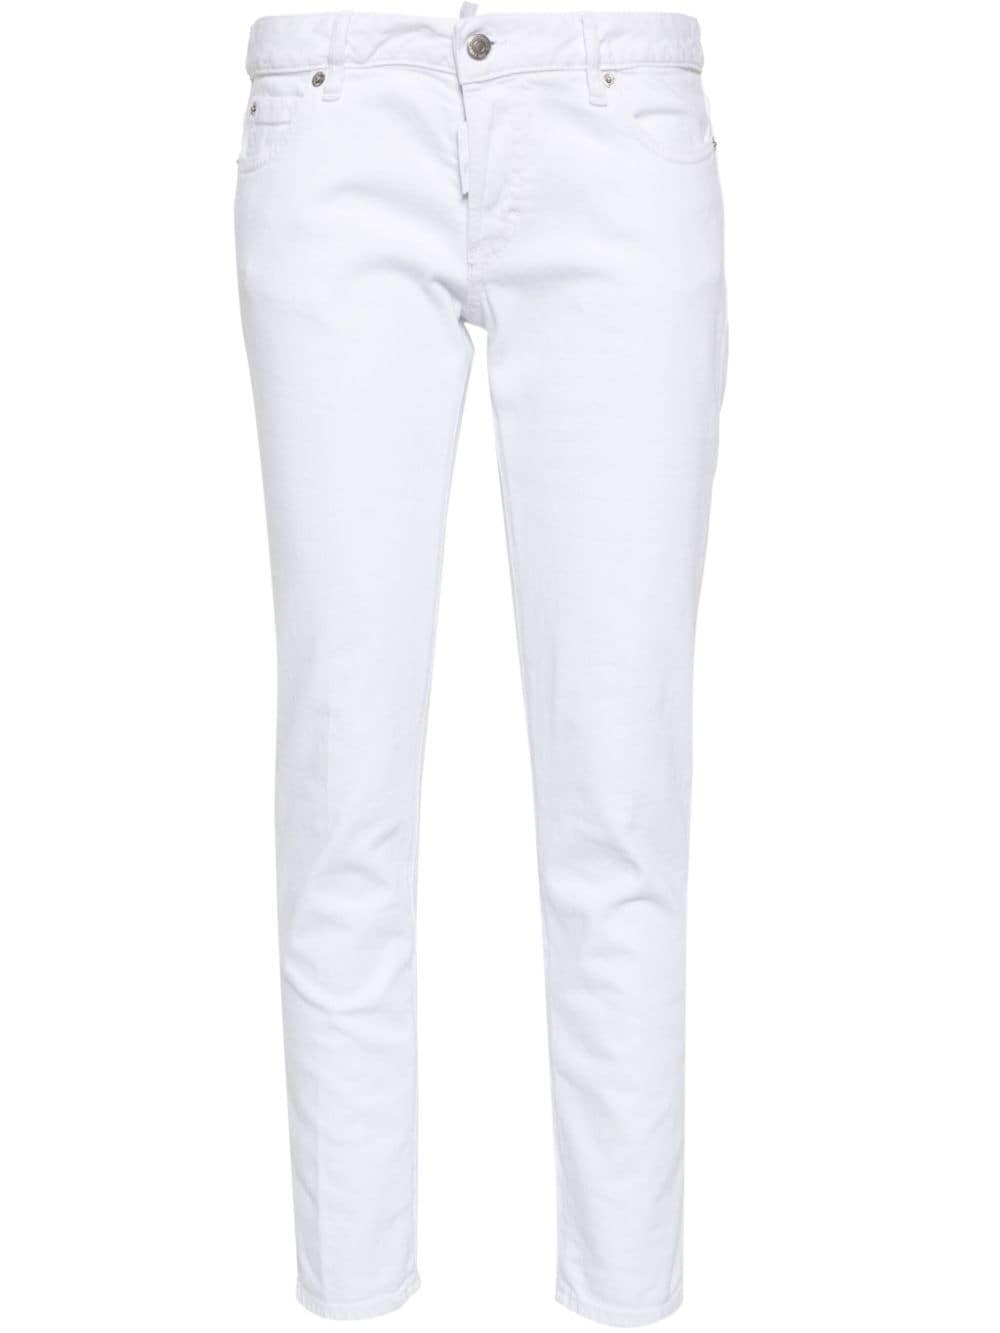 Jeans bianchi in cotone elasticizzato